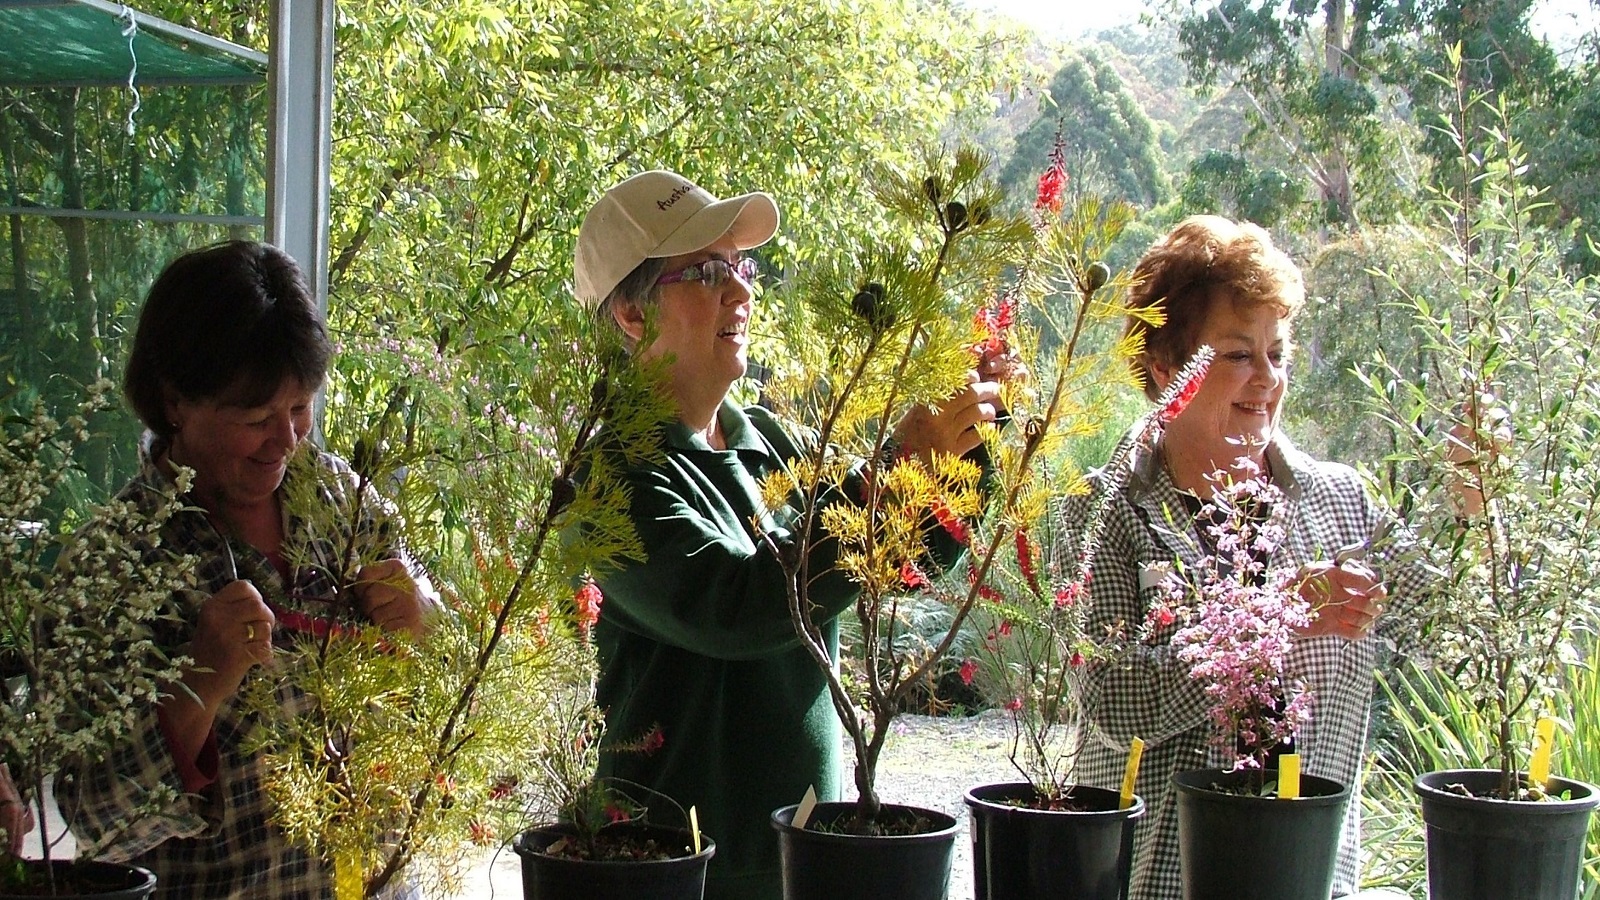 People: Friends and volunteers tending to plants